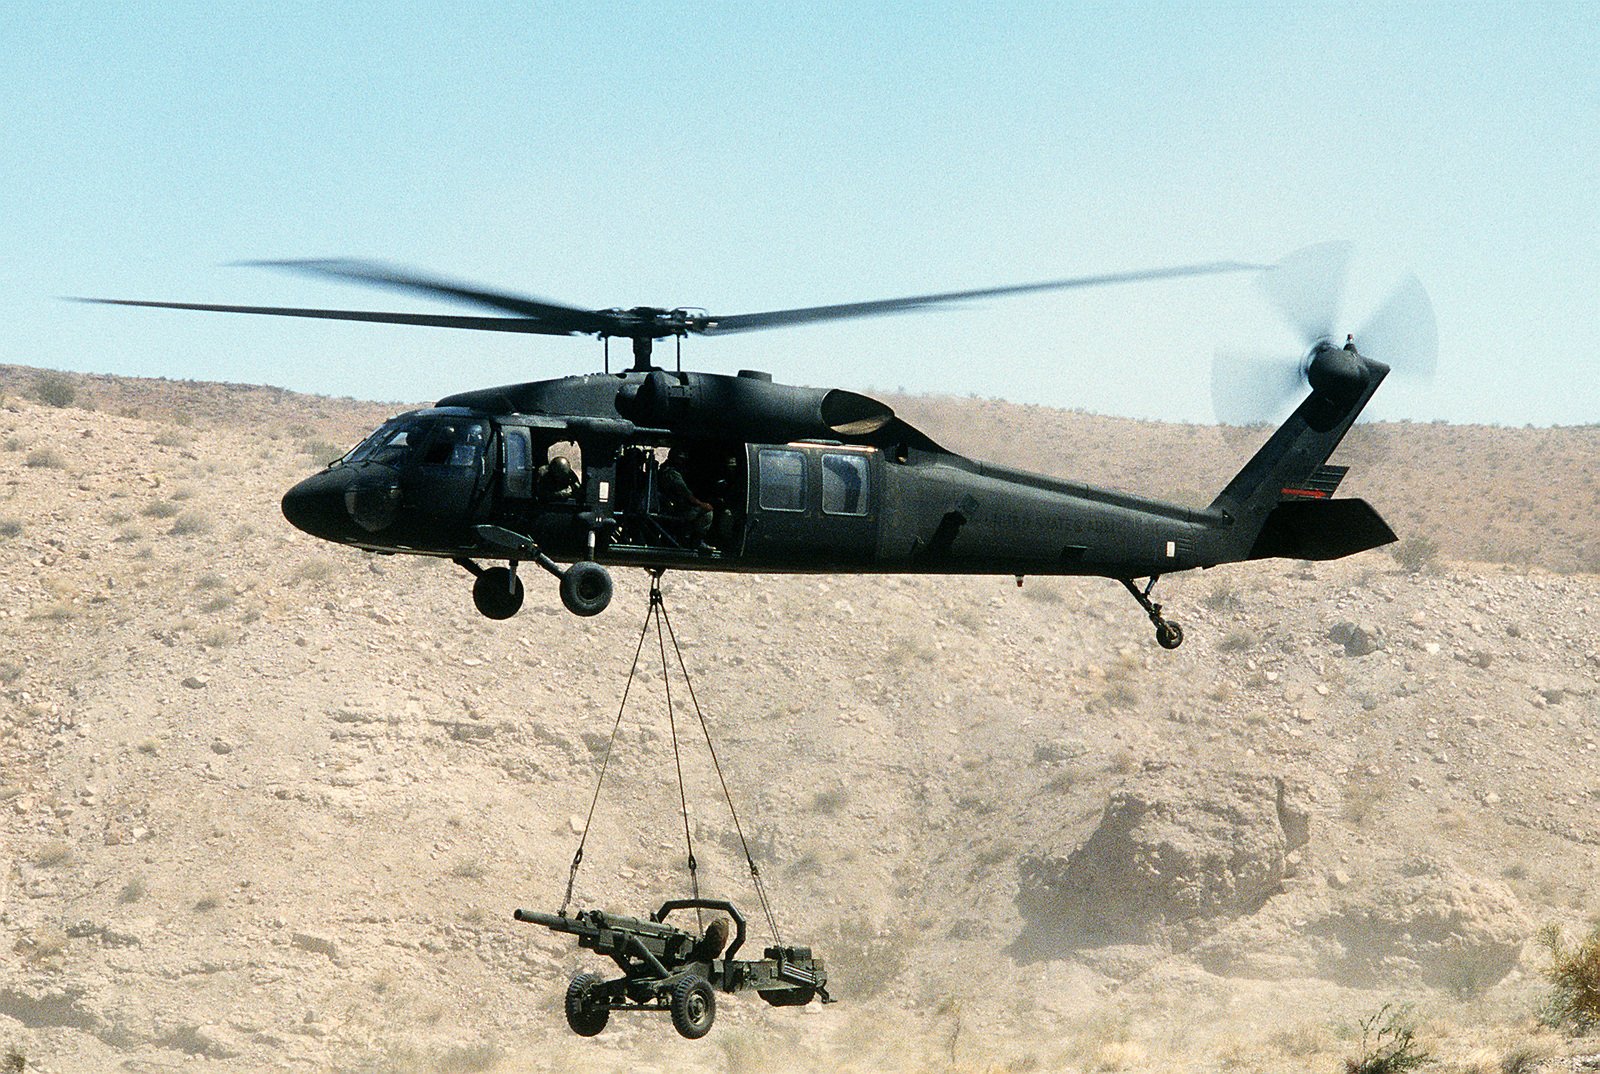 Вертолет uh 60 black hawk. Вертолёт uh-60 Black Hawk. Вертолет uh 60 черный ястреб. Вертолет Блэк Хоук. Uh-60a «Блэк Хоук».